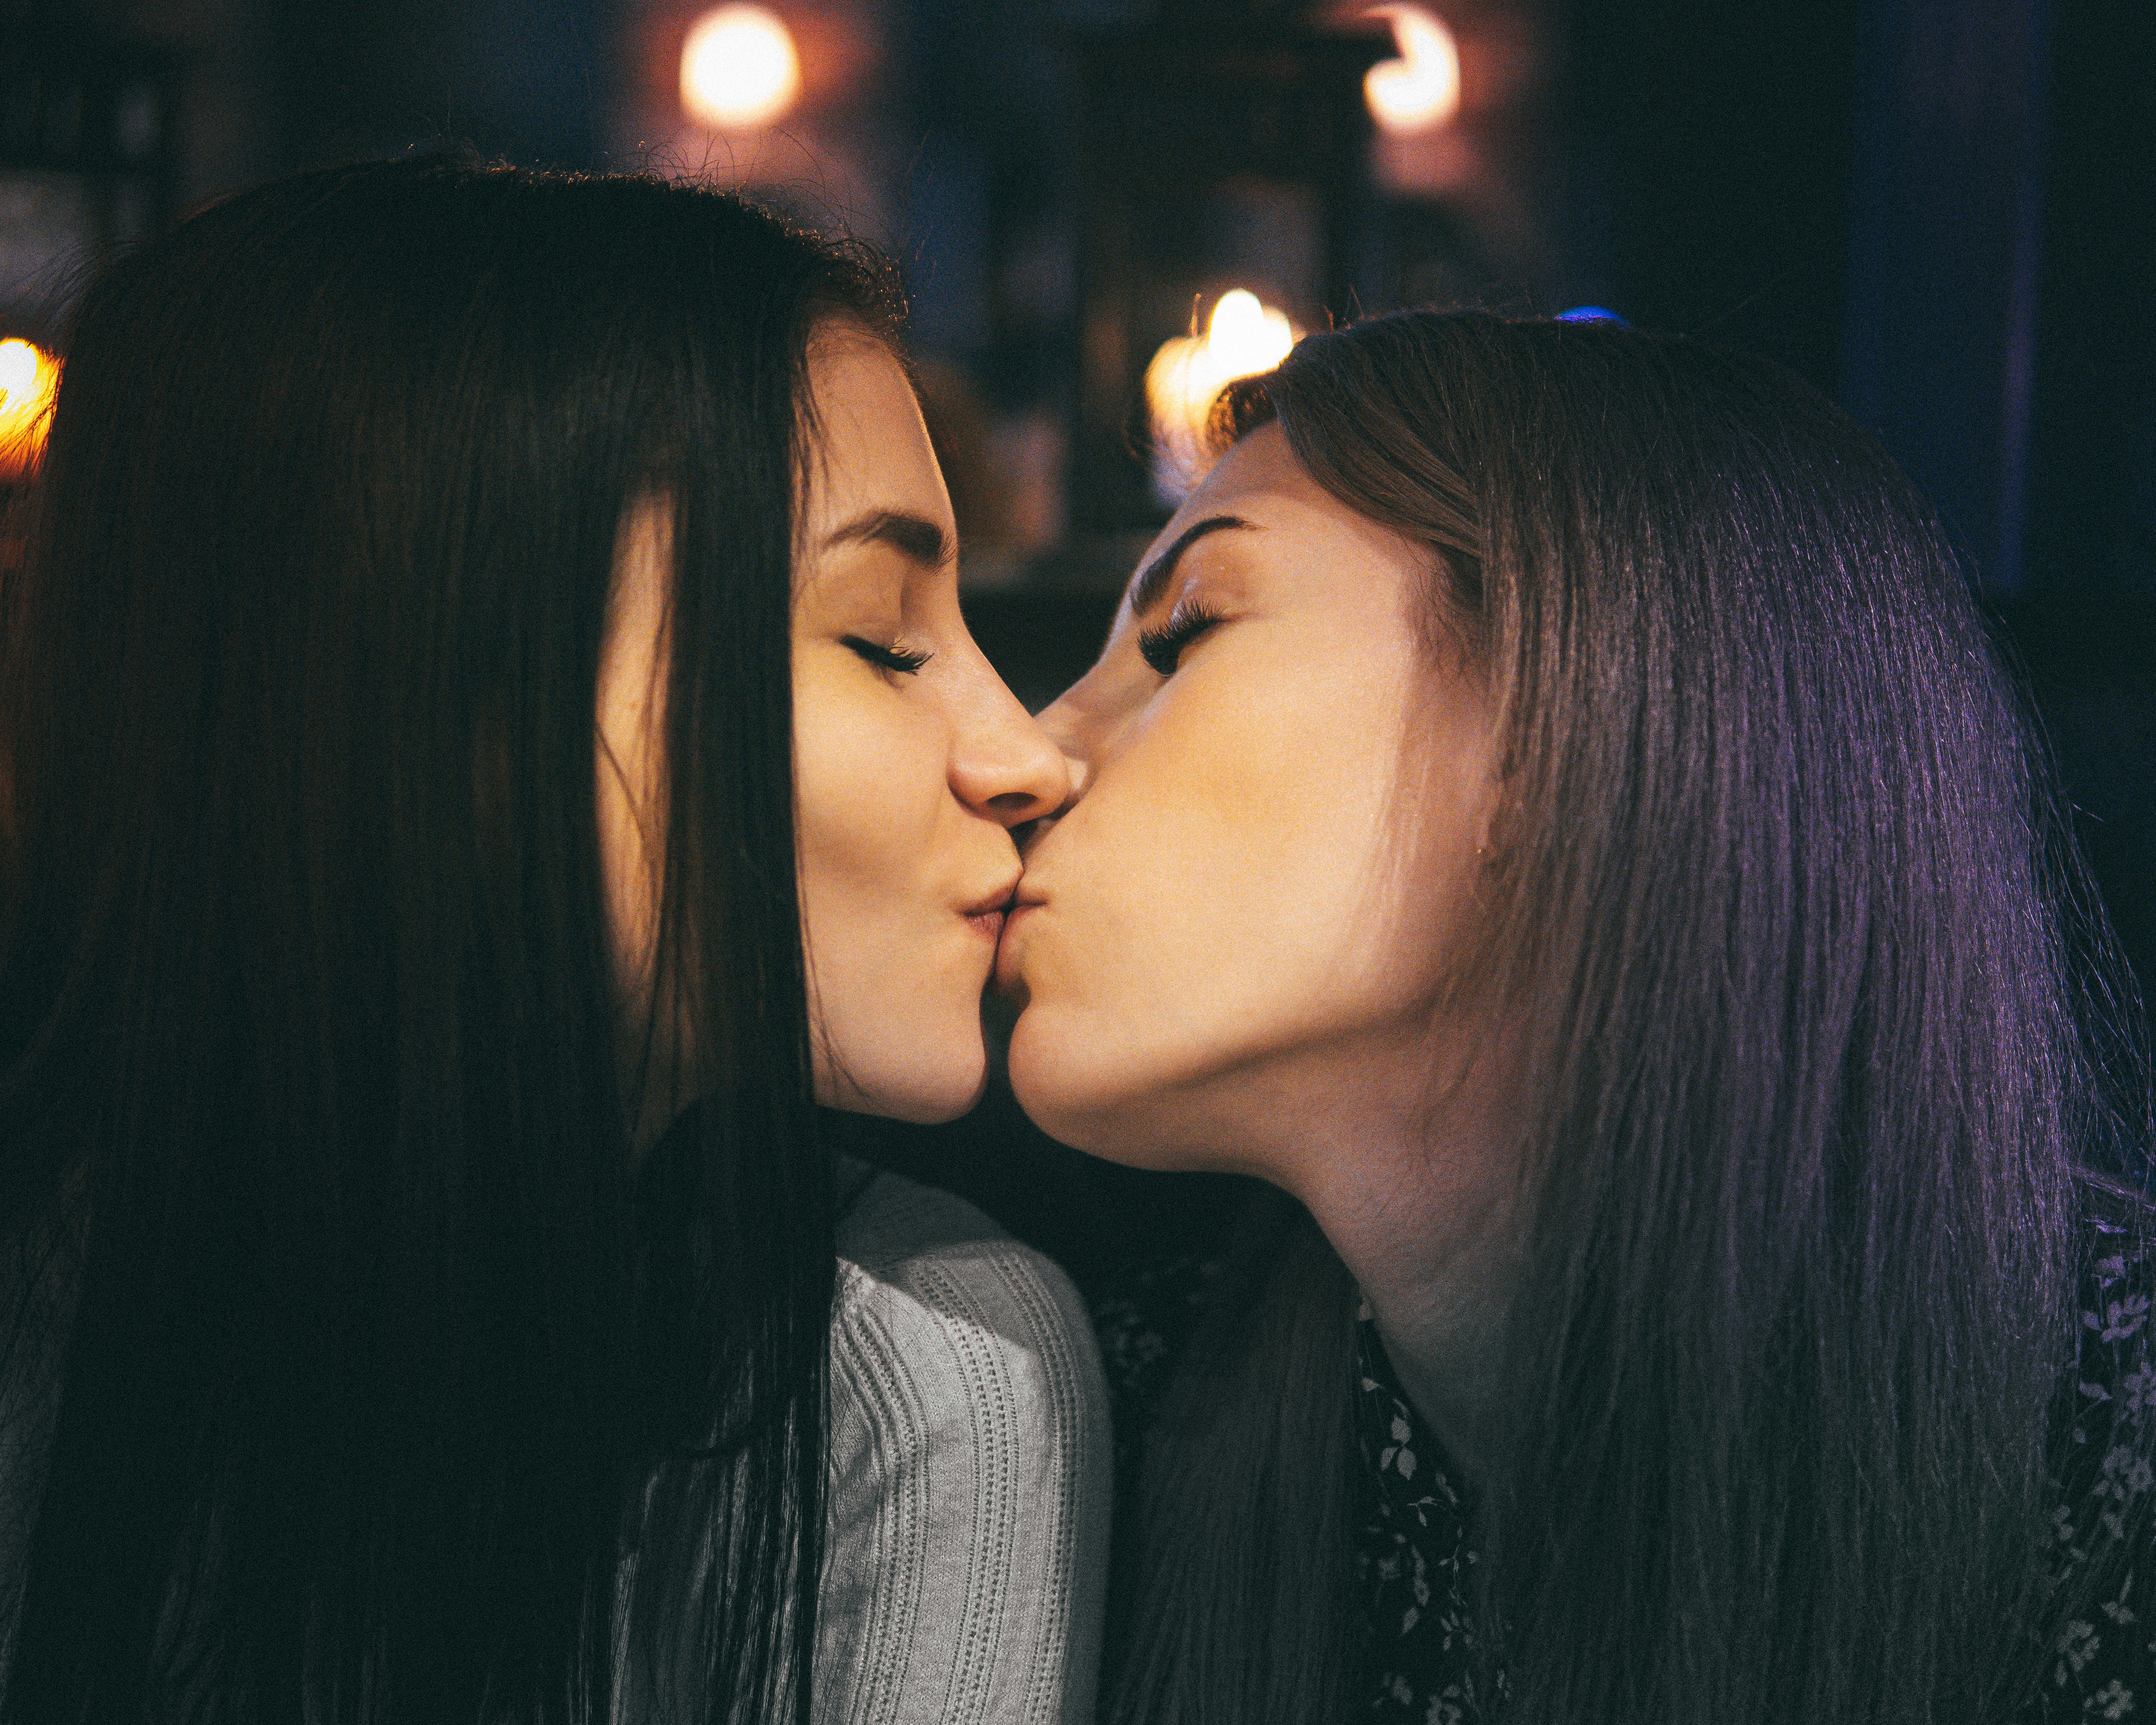 Girl kiss girl videos